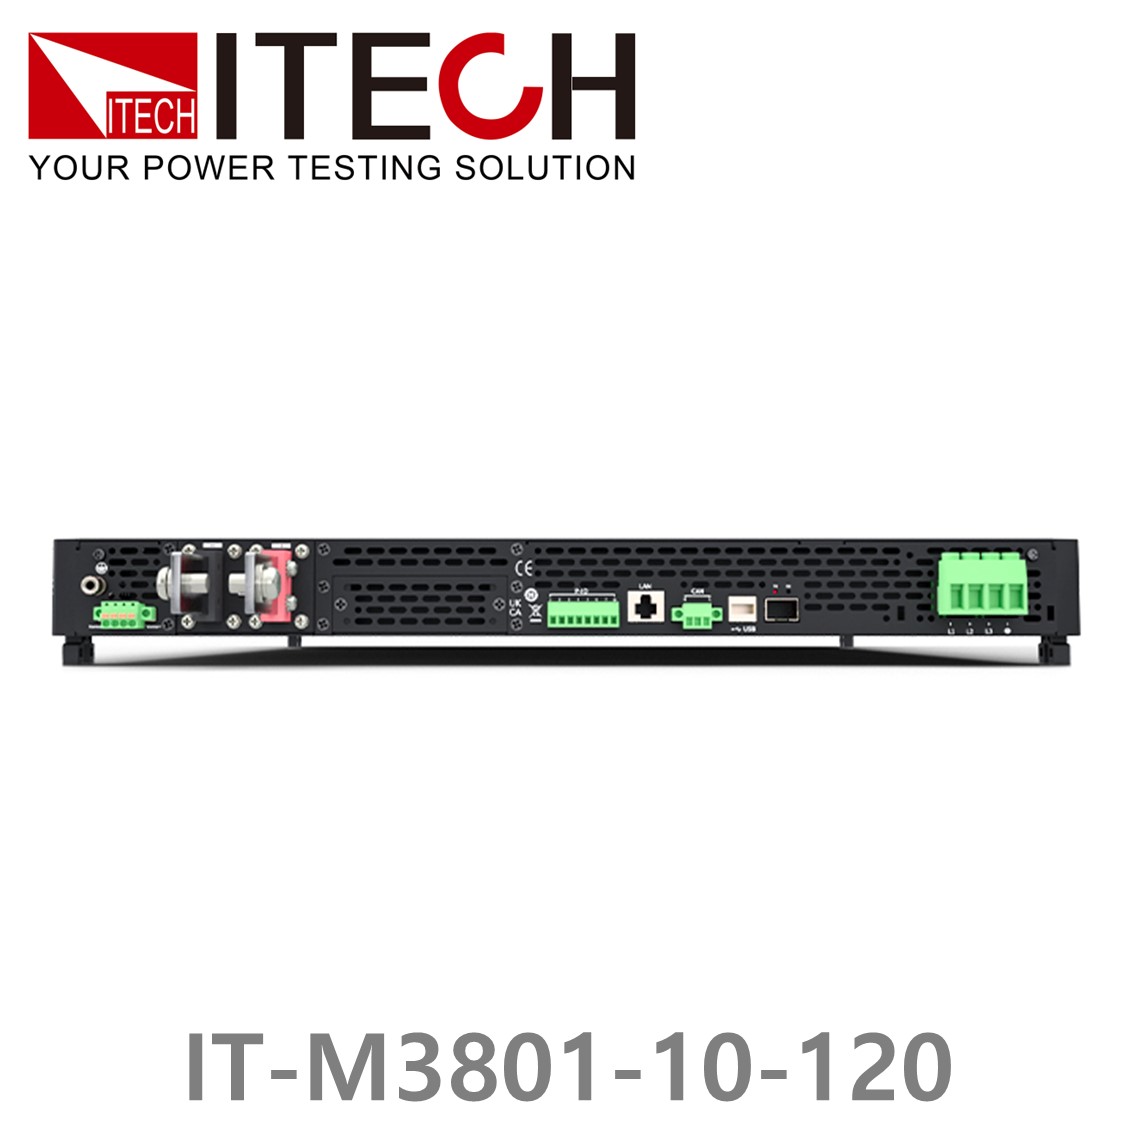 [ ITECH ] IT-M3801-10-120, 10V/2～120A/6～1200W DC 전자로드, DC전자부하기